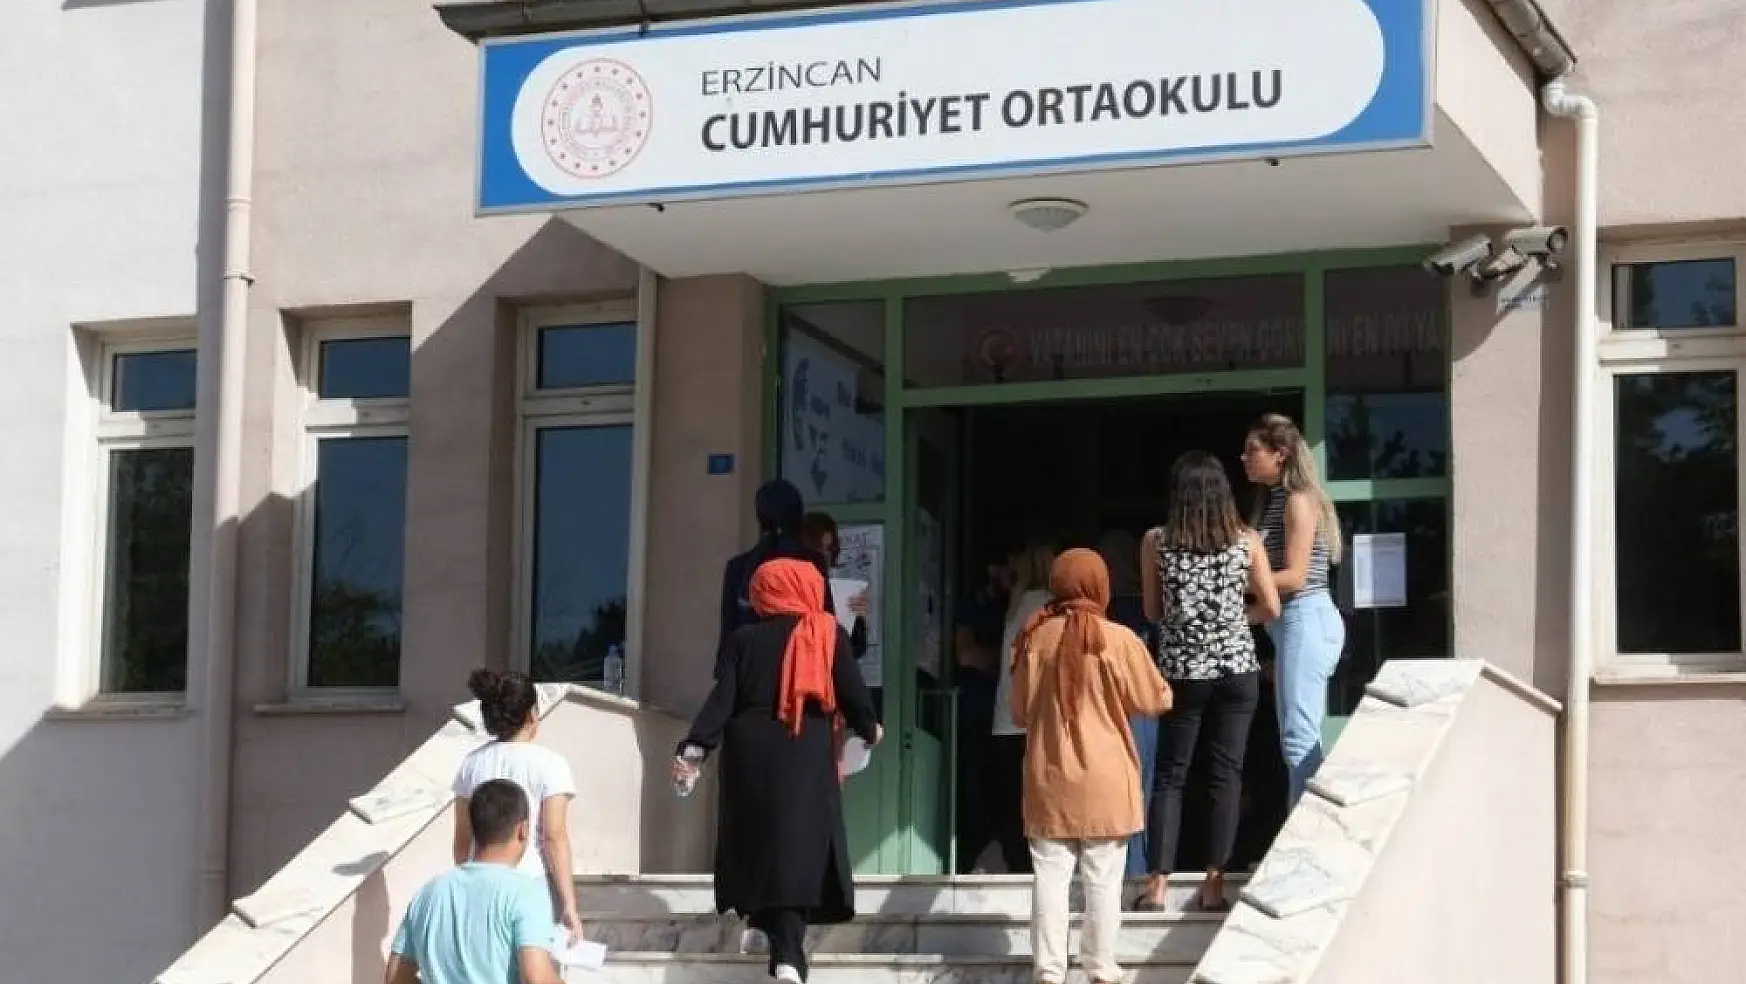 Erzincan'da ortaöğretim mezunu adaylar sınav heyecanı yaşadı
